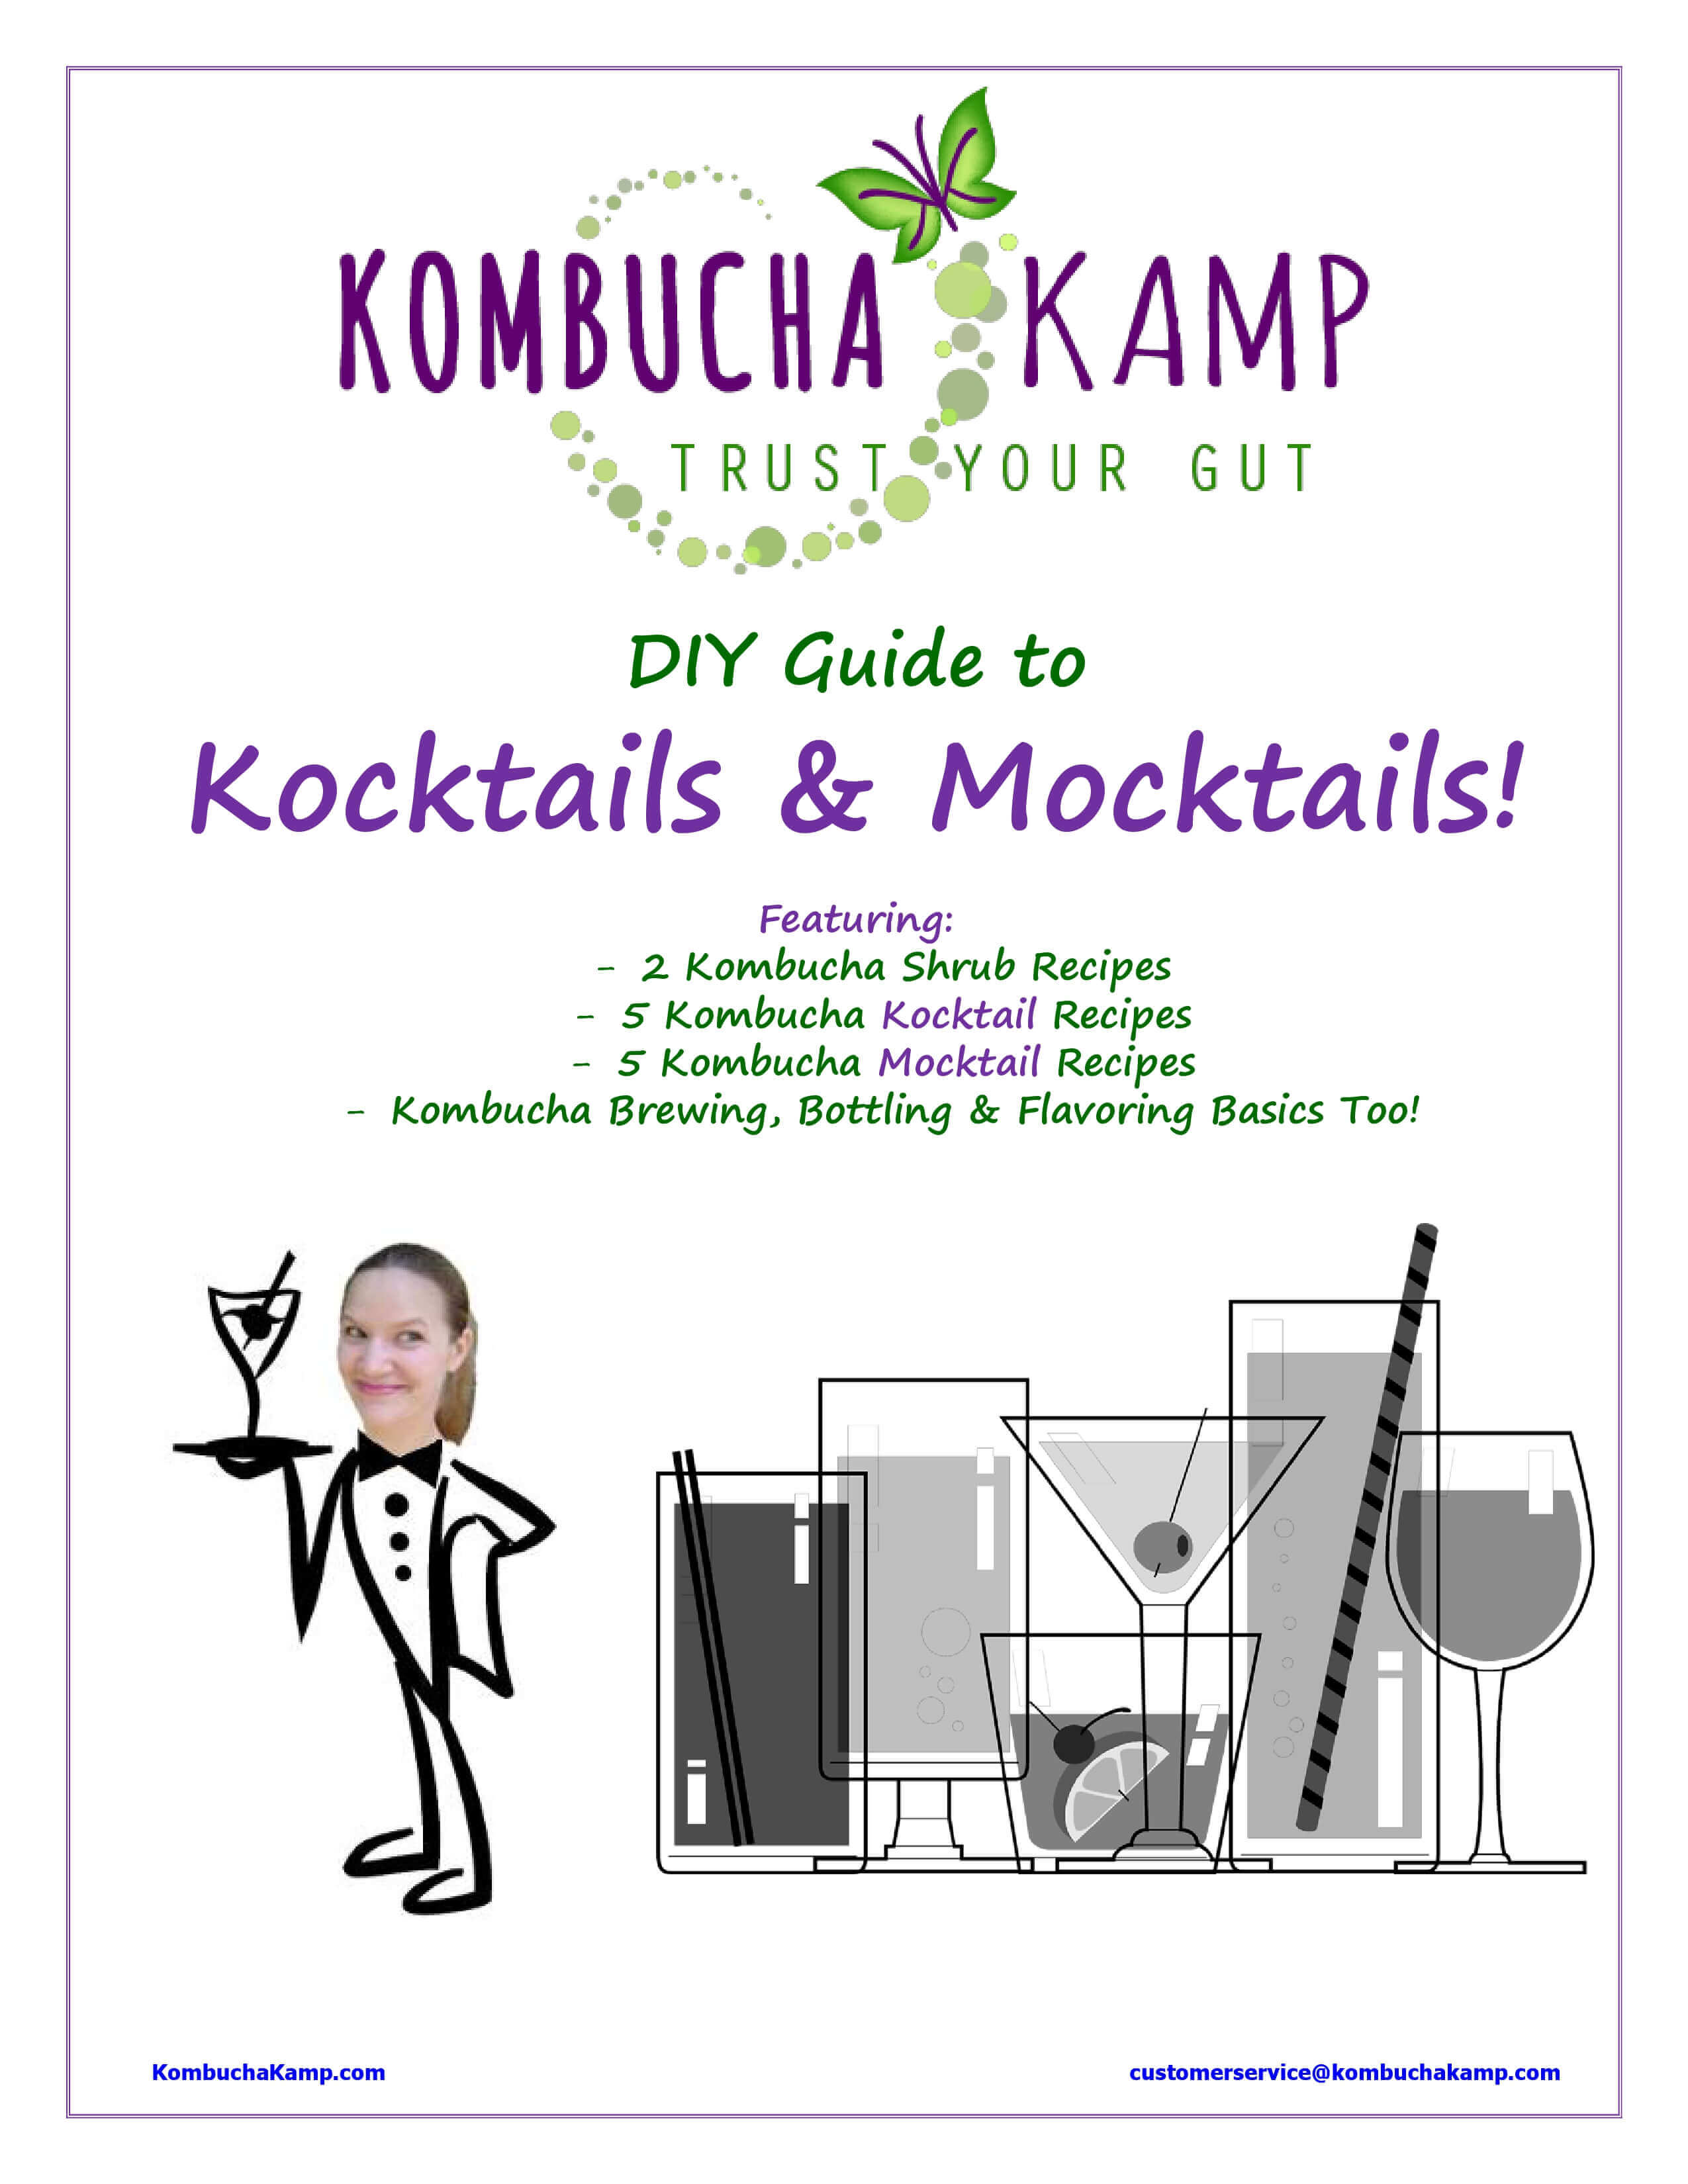 DIY Guide to Kocktails & Mocktails